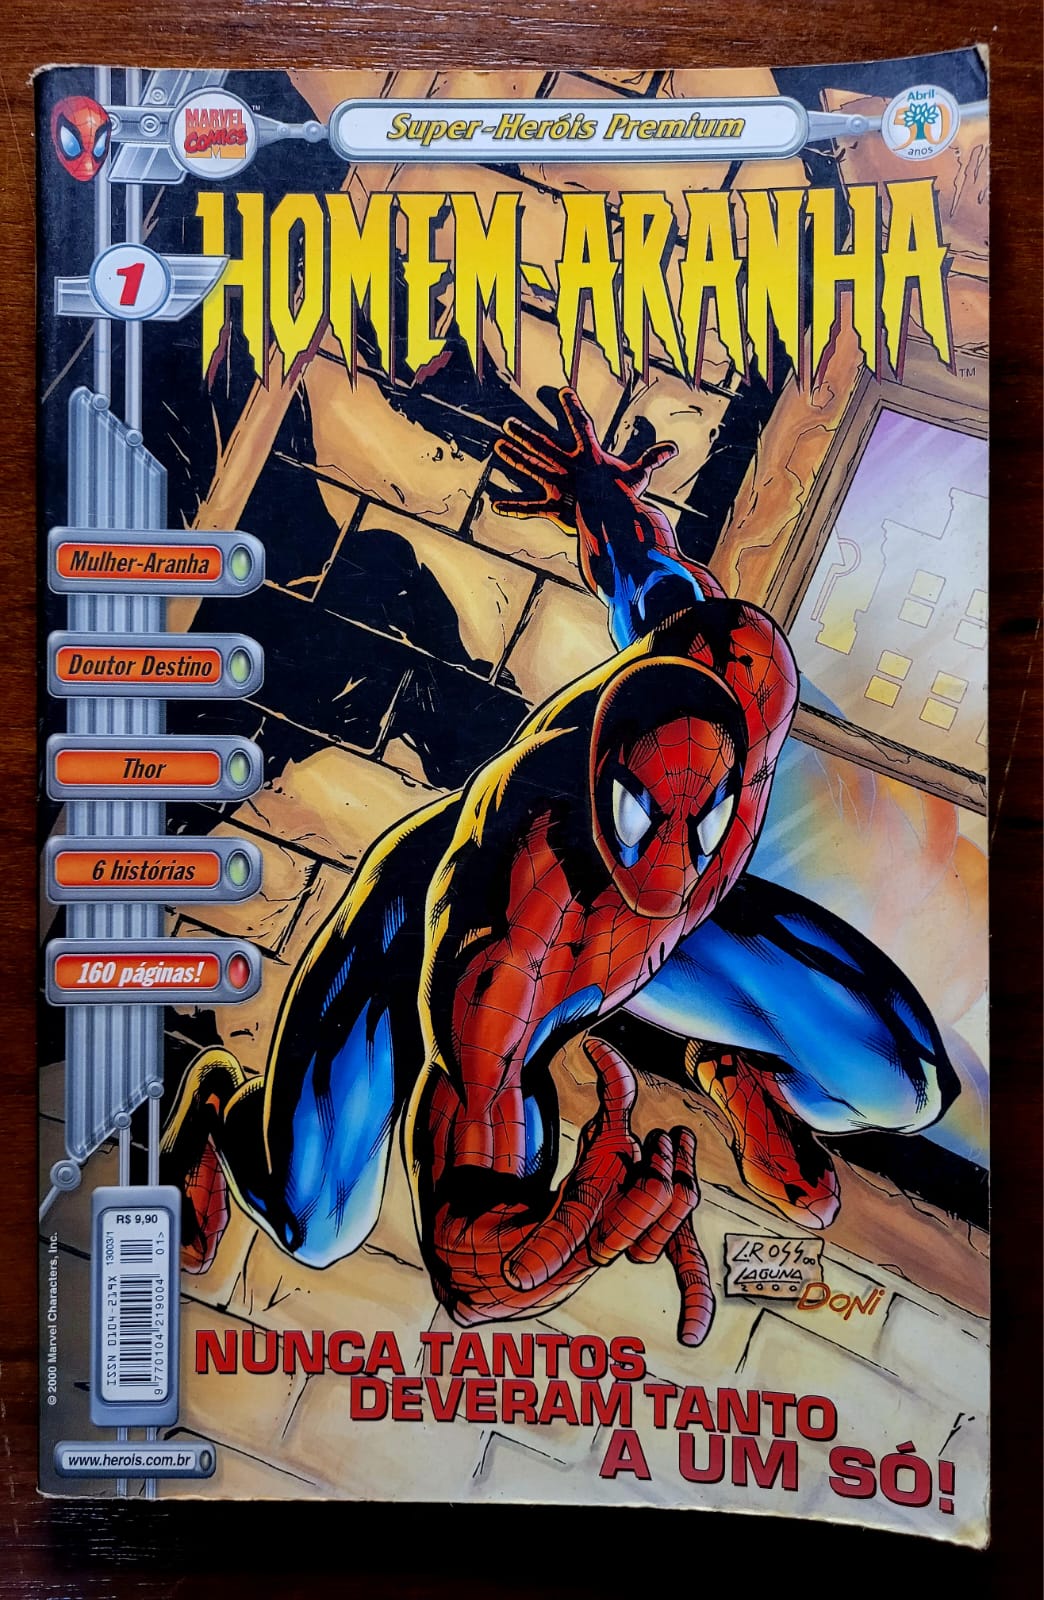 Super Herois Premium Homem Aranha No 1 1 Casa do Colecionador